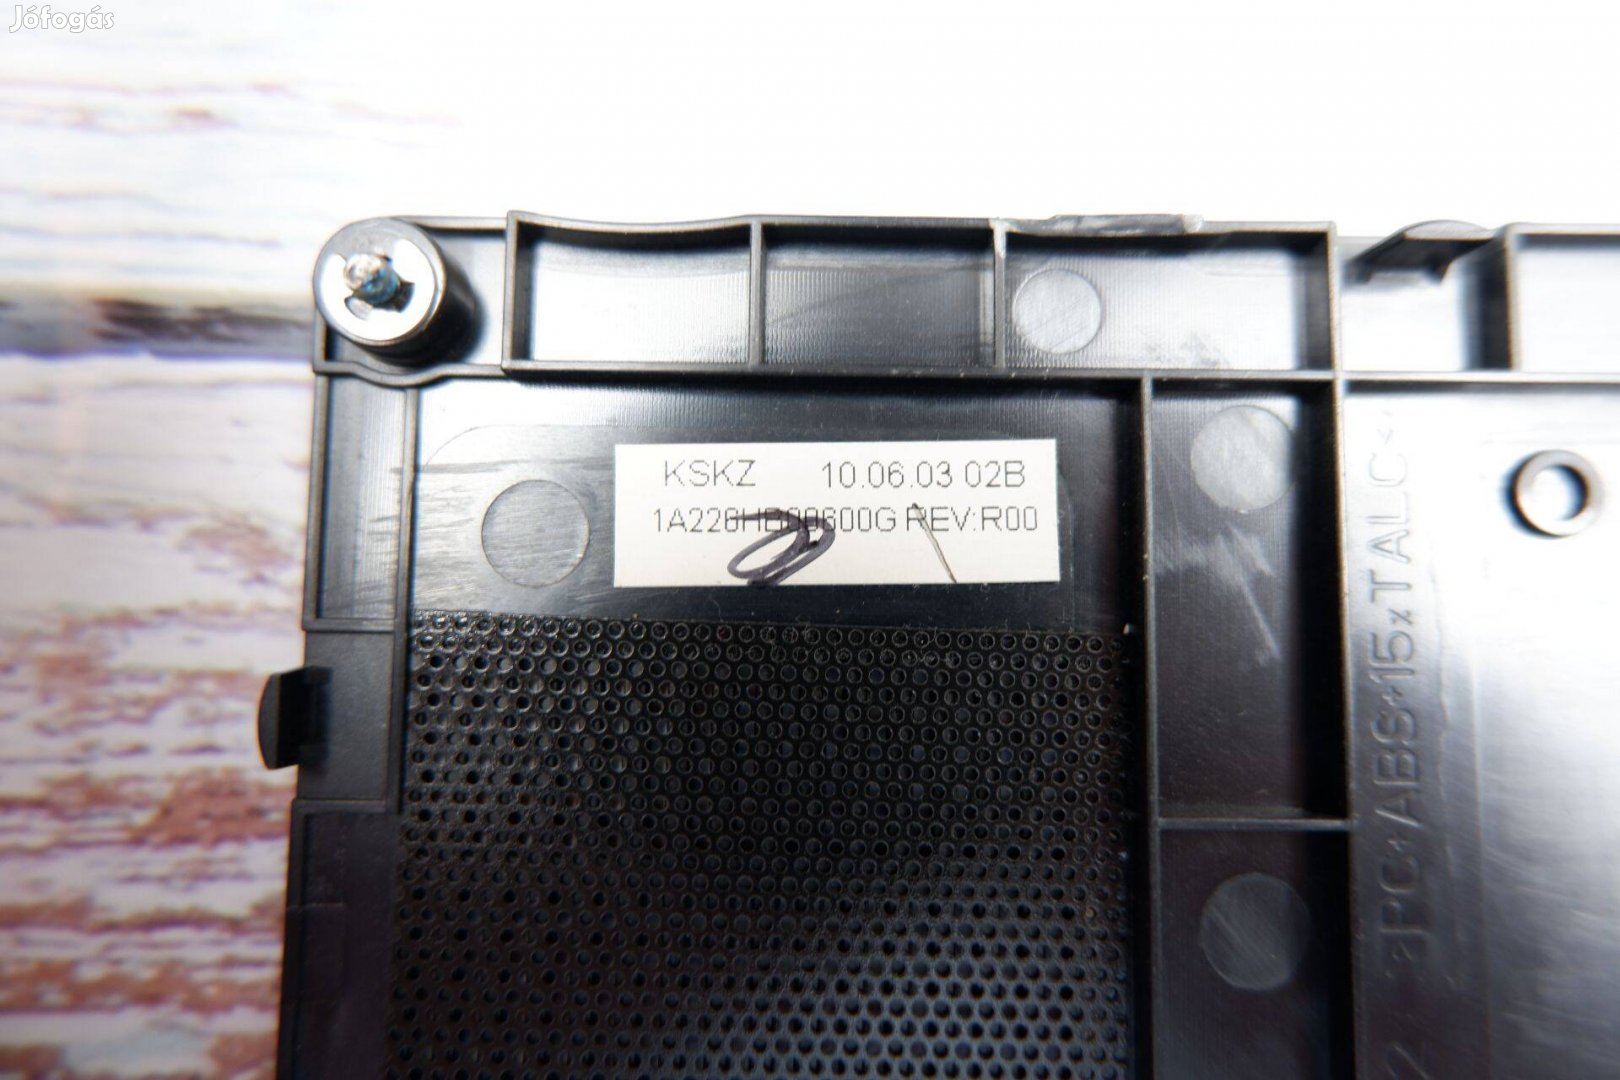 HP Compaq CQ62 G62 HDD takaró elem fedél burkolat 1A226HB00600G